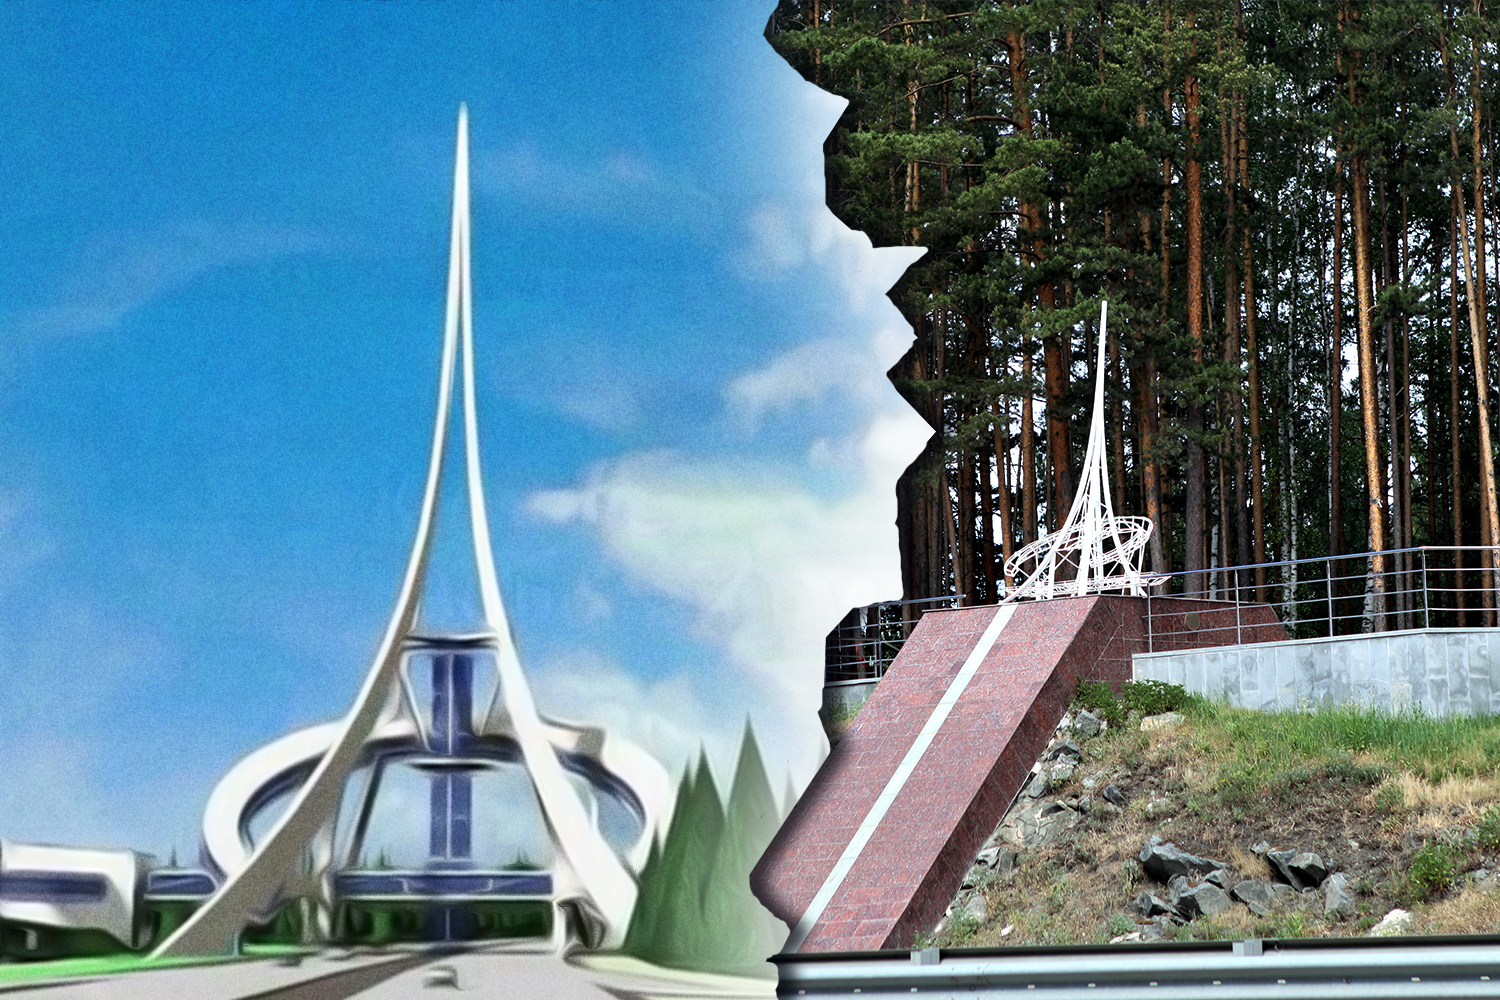 Вместо «Эйфелевой башни» — бантики от молодоженов. Как угасает туристический мегапроект под Екатеринбургом